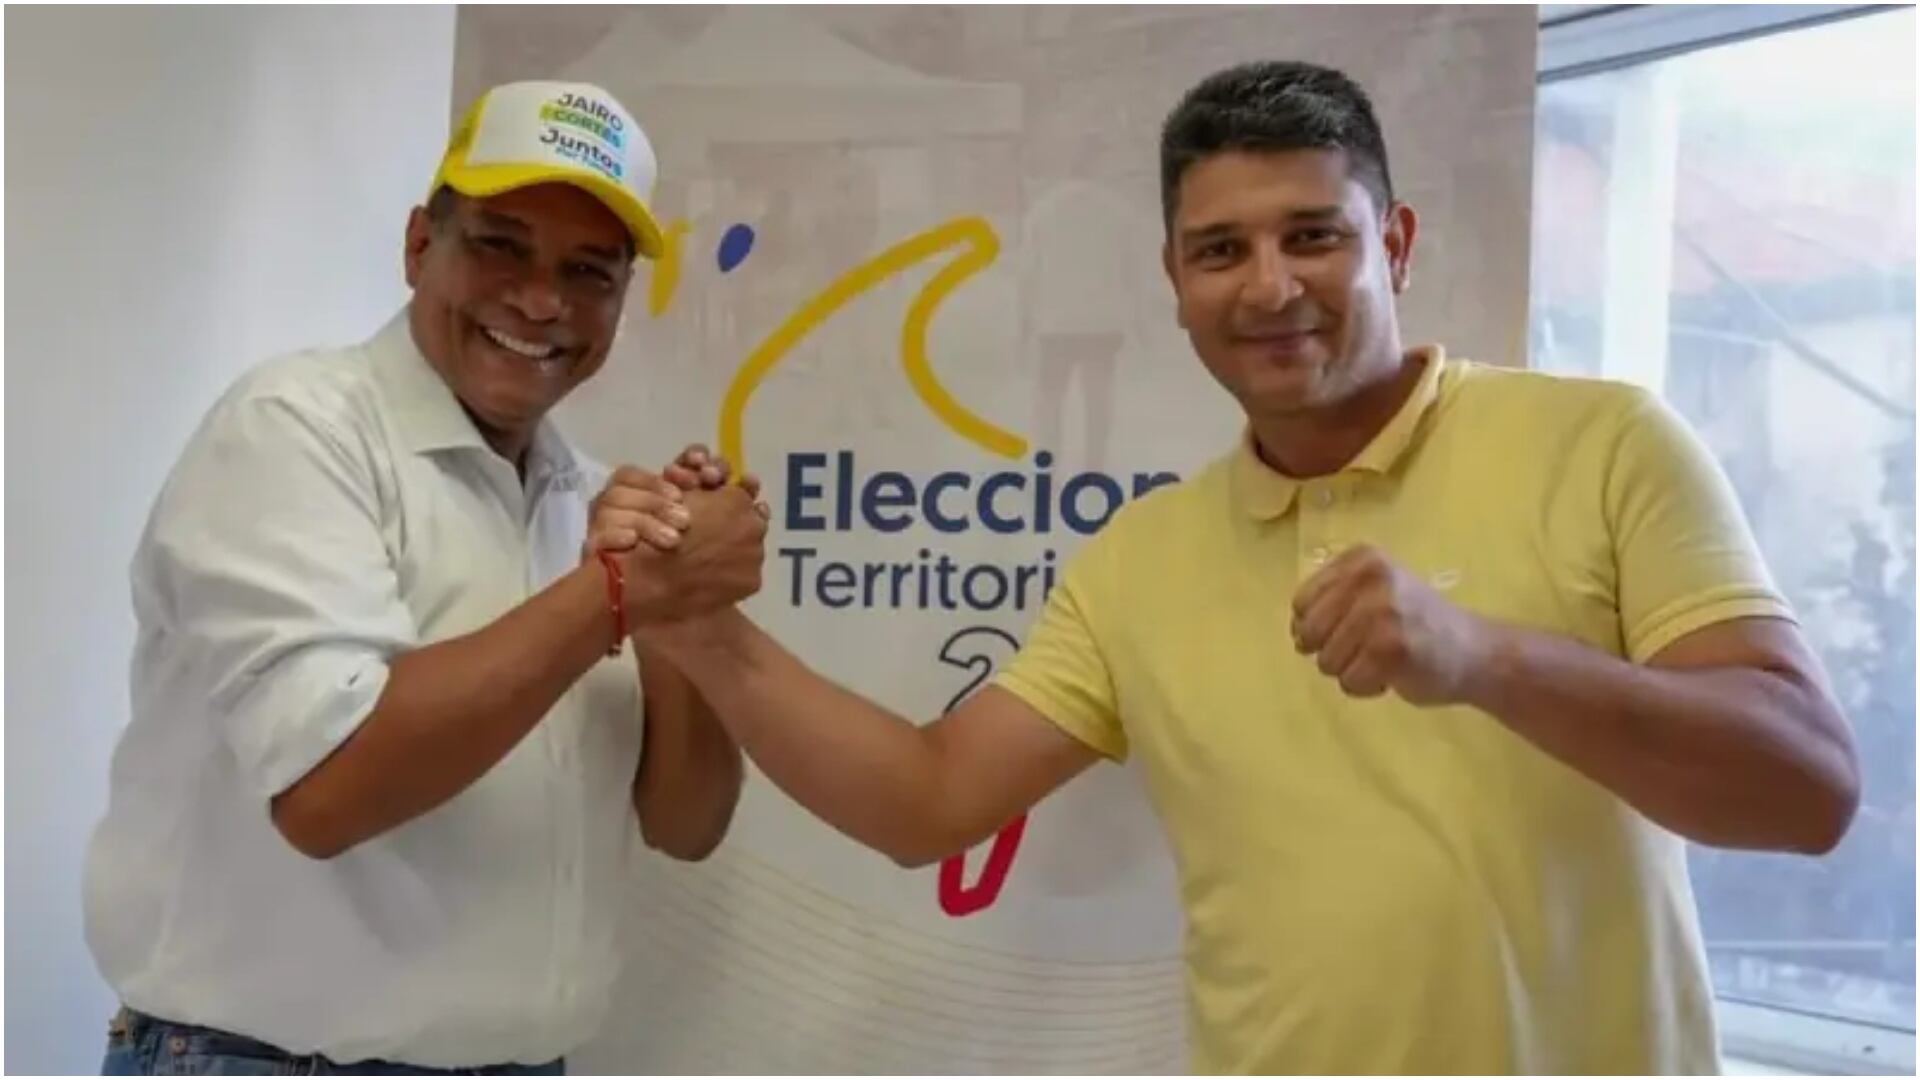 A la derecha de la foto: Félix Henao, alcalde de Tumaco que sufrió intento de sicariato (redes sociales de Félix Henao)